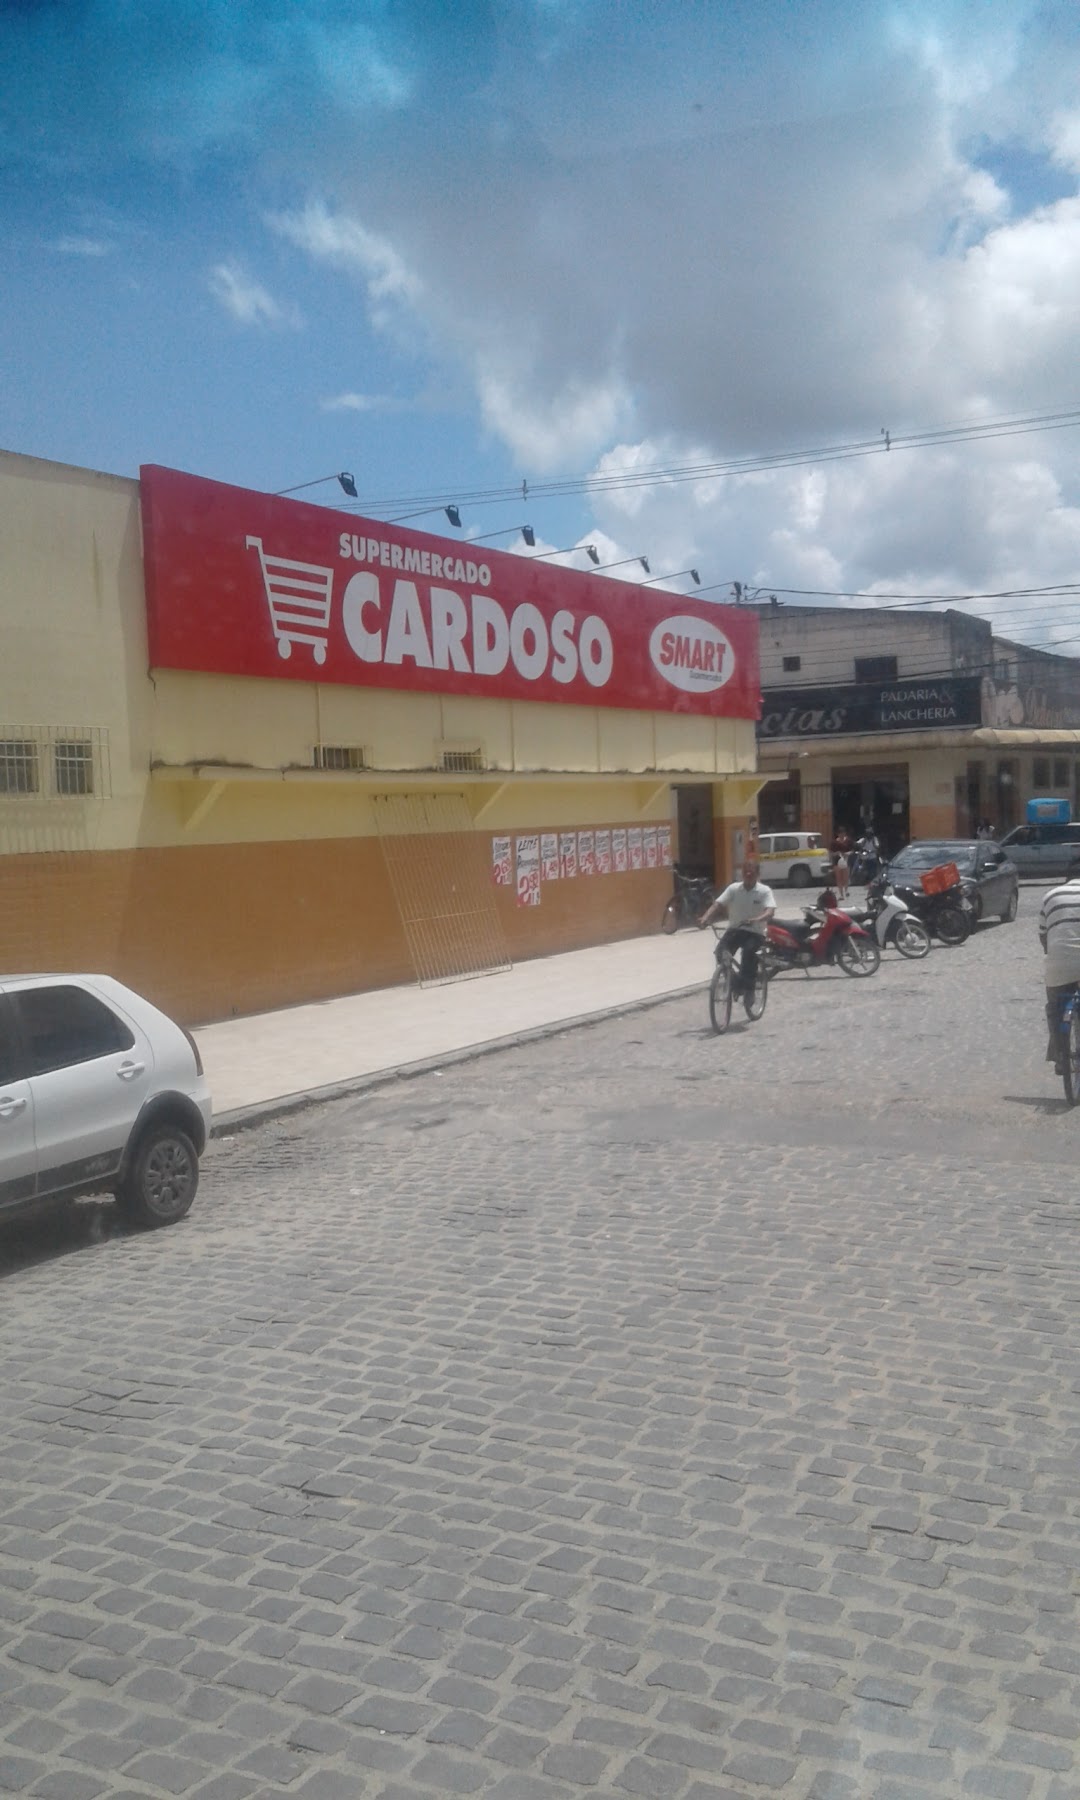 Supermercado Cardoso Smart